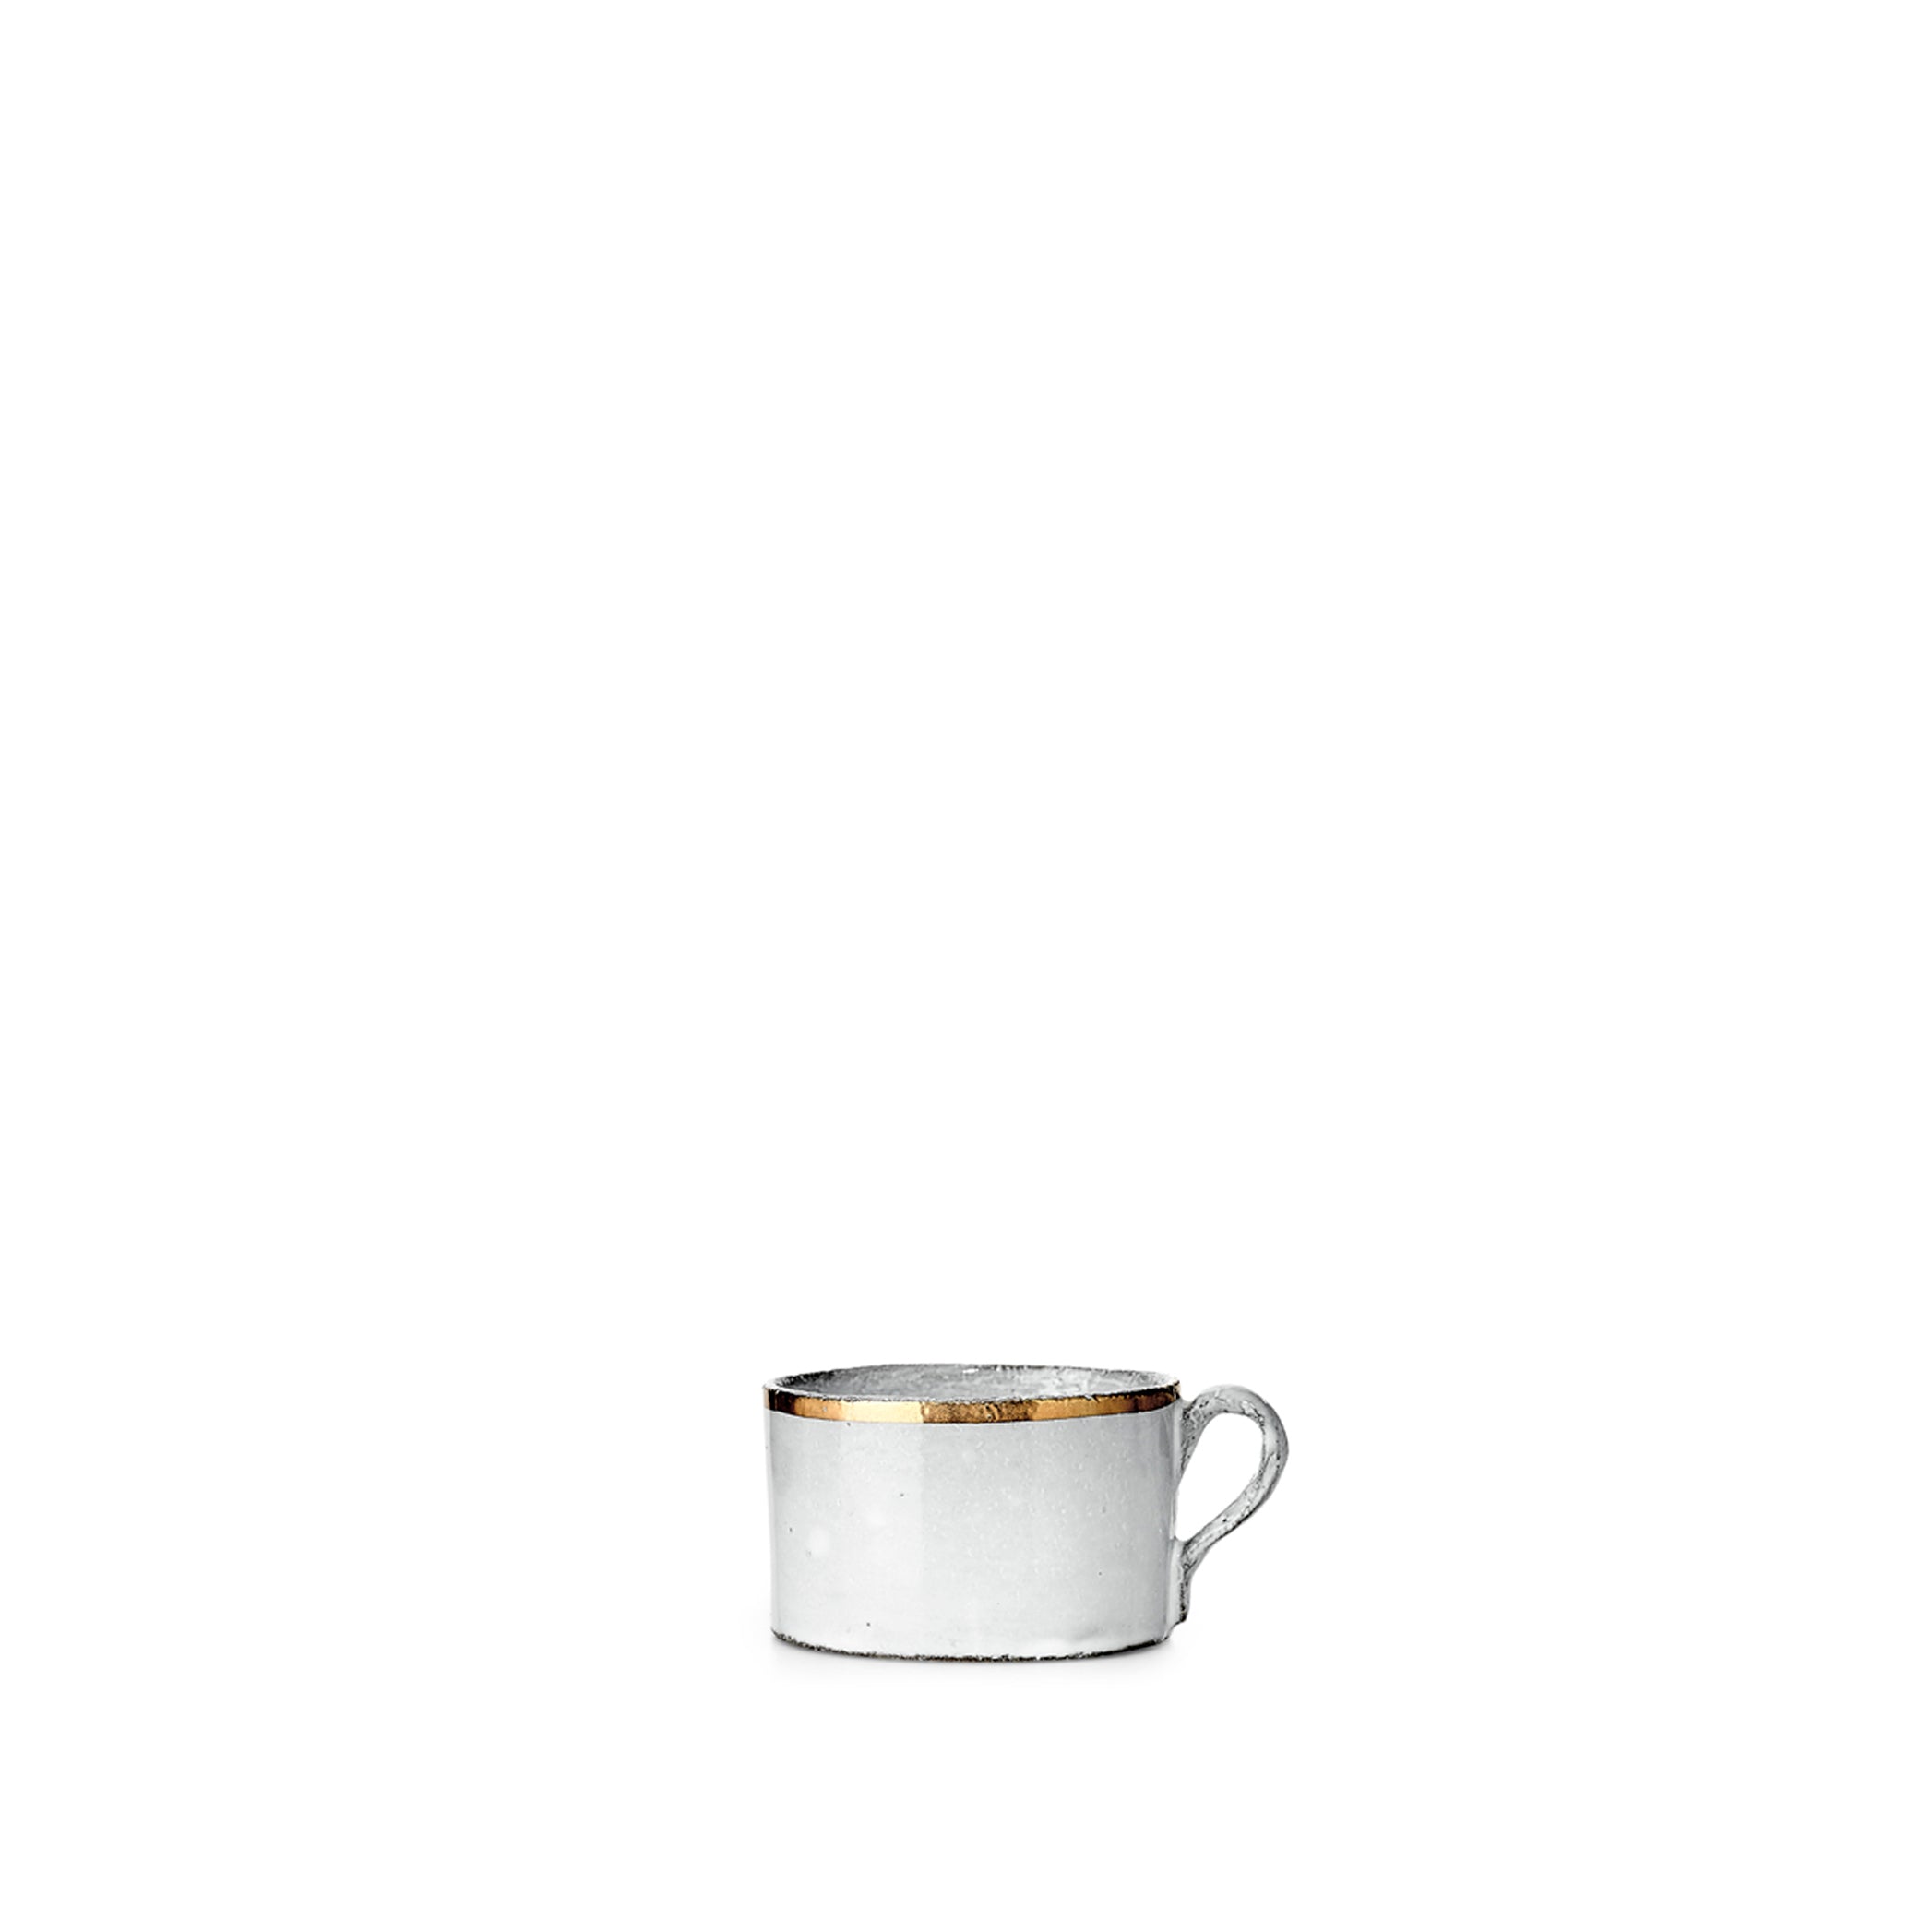 Crésus Low Cup by Astier de Villatte, 5.5cm